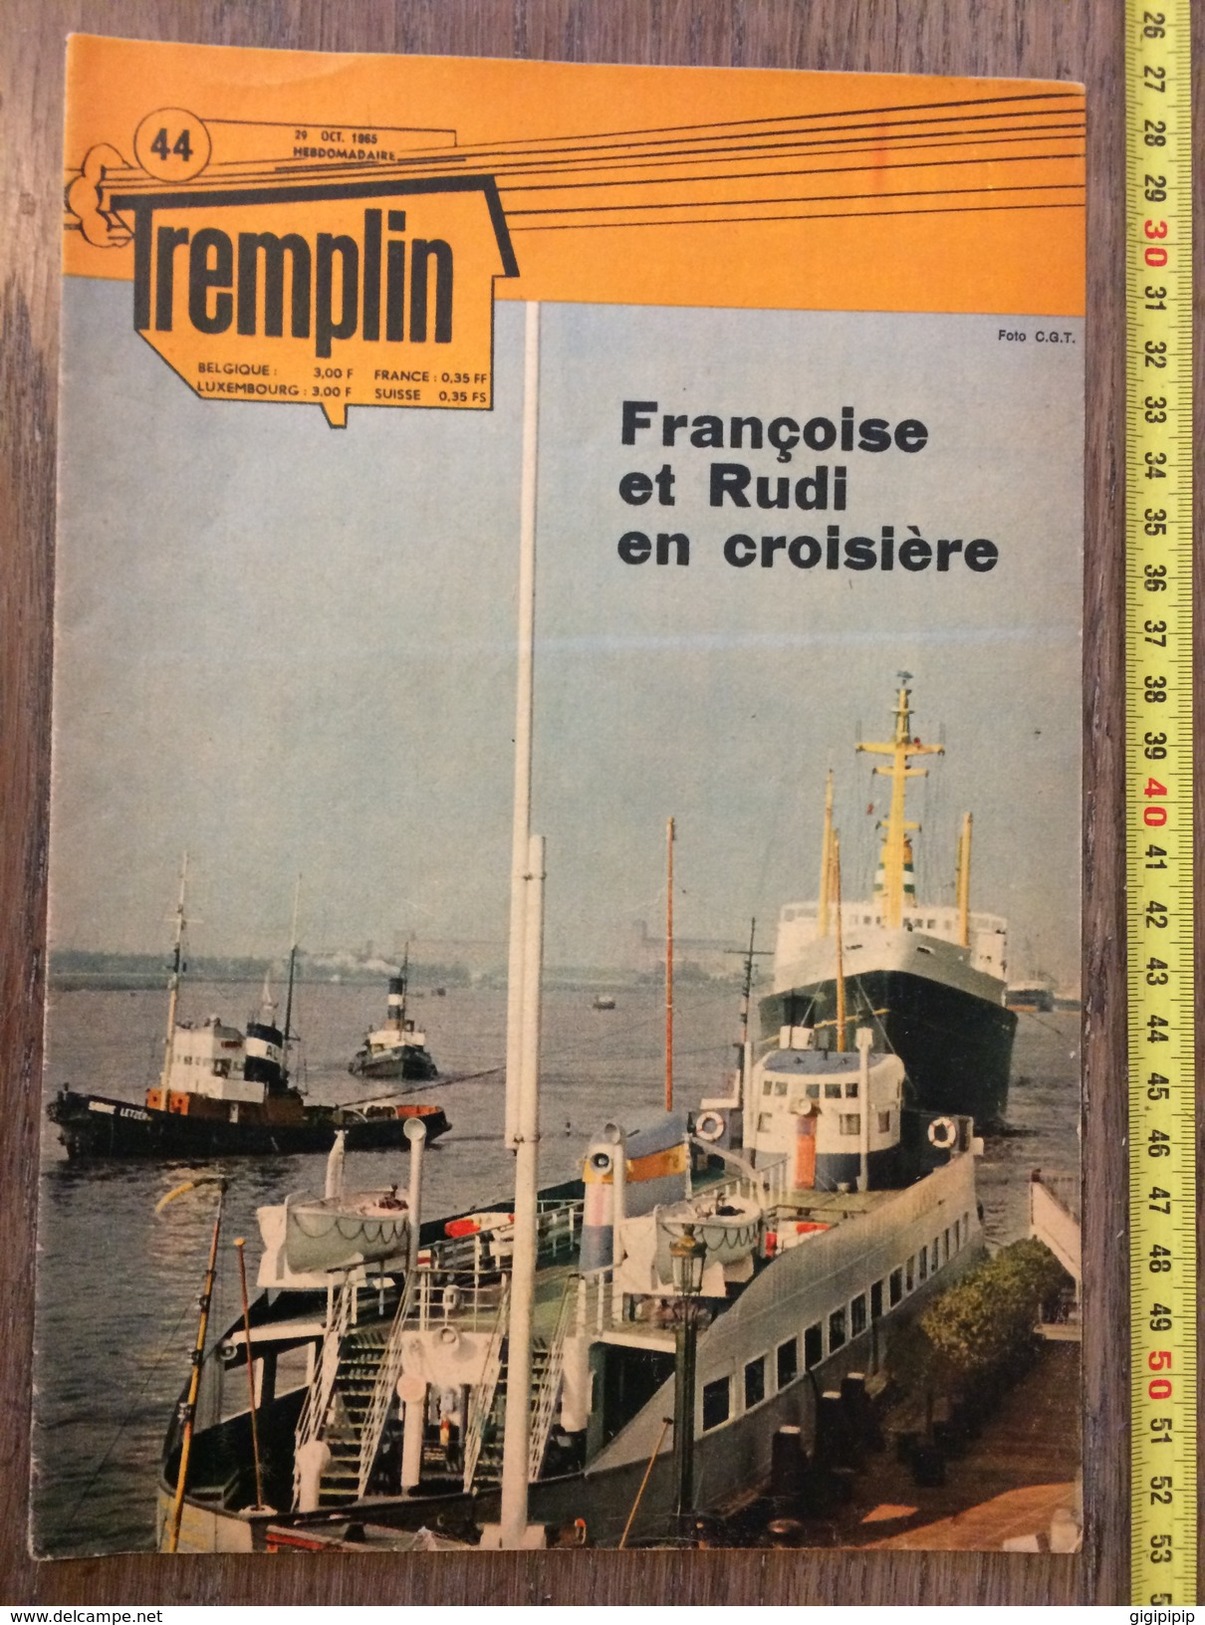 REVUE HEBDOMADAIRE TREMPLIN 1965 44 ANVERS - Vaillant